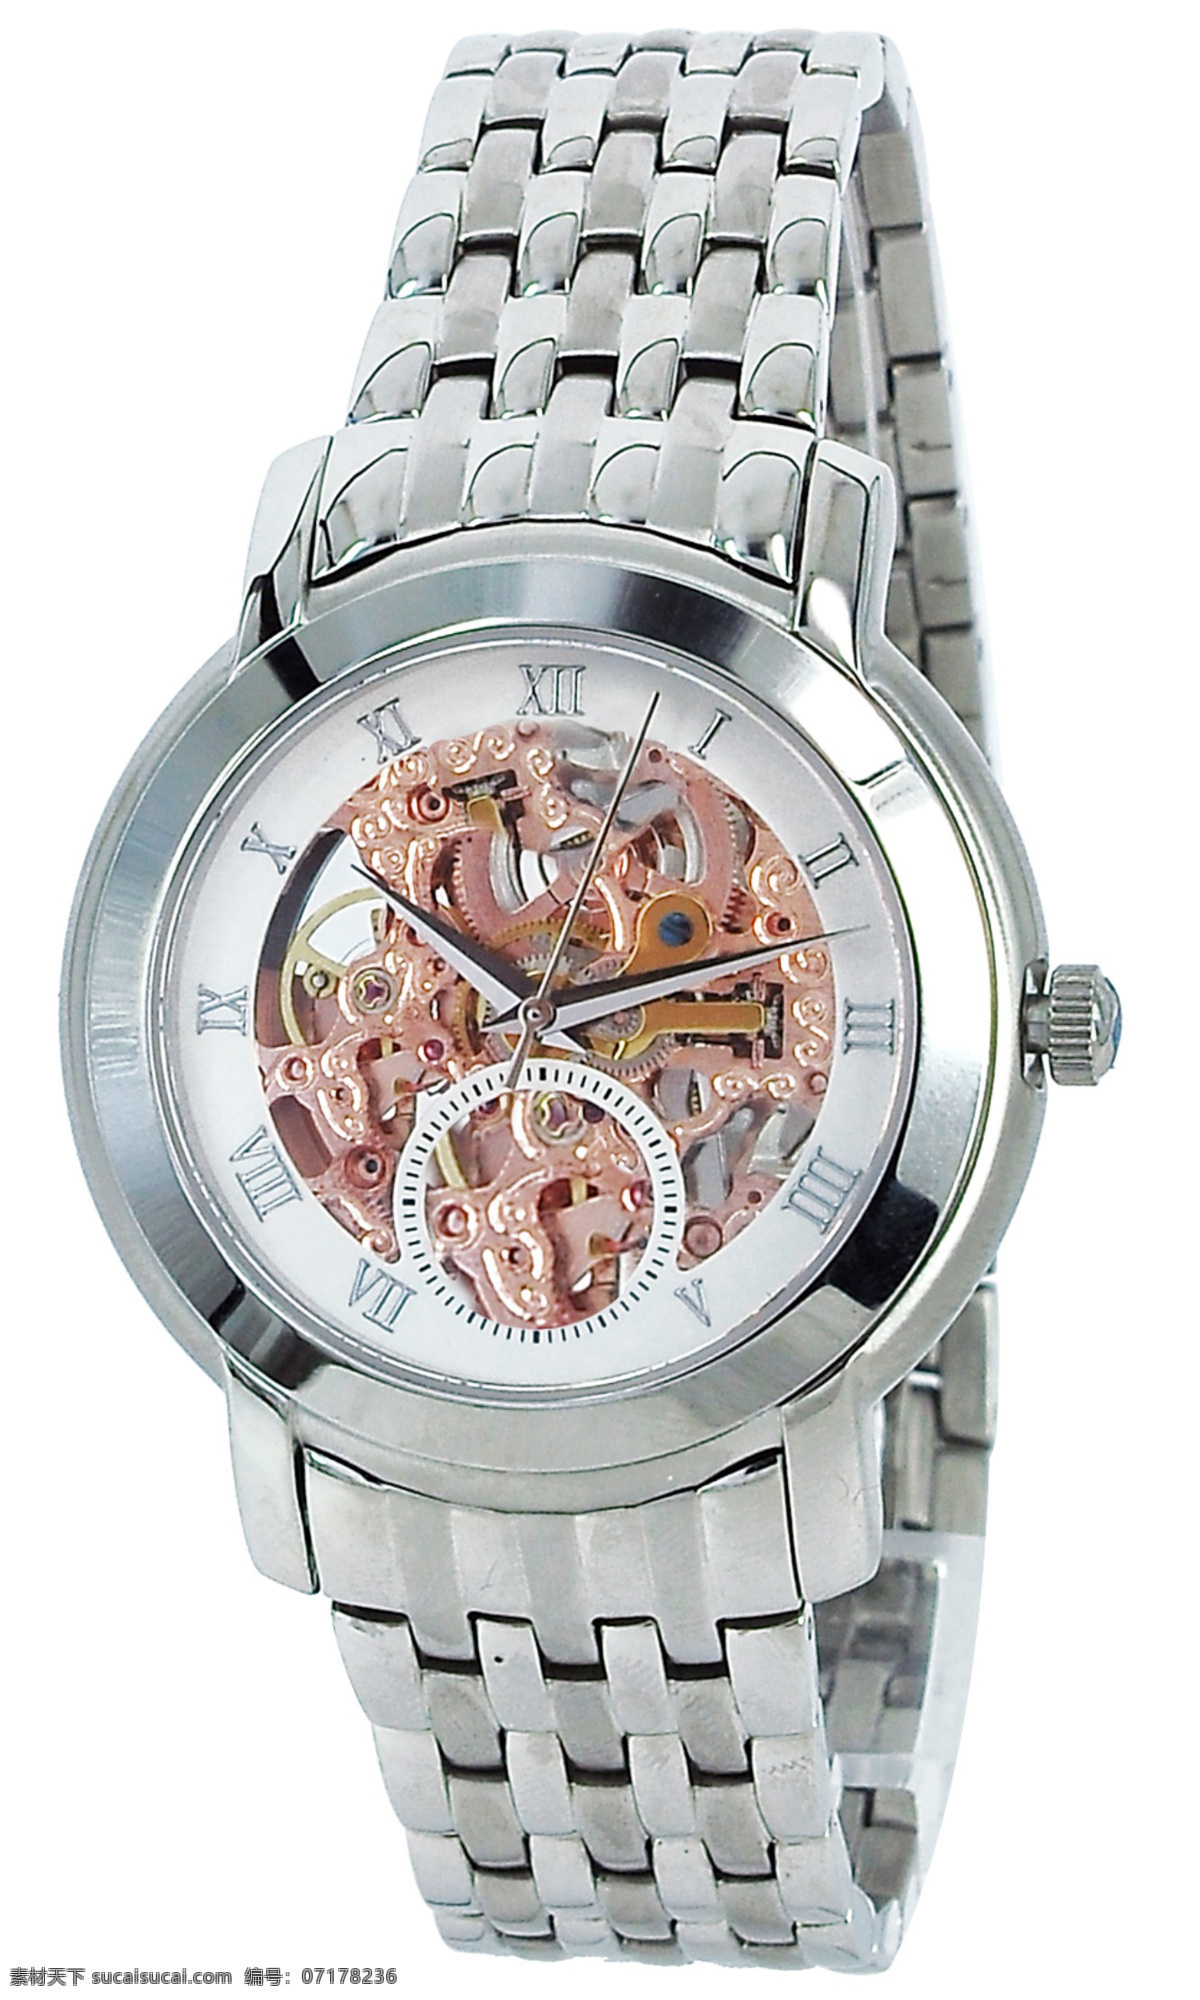 生活百科 生活素材 手表 米 防水 摄影手表图片 机械手表 时尚动感手表 流行手表 带钻手表 金色手表 手表摄影 矢量图 日常生活